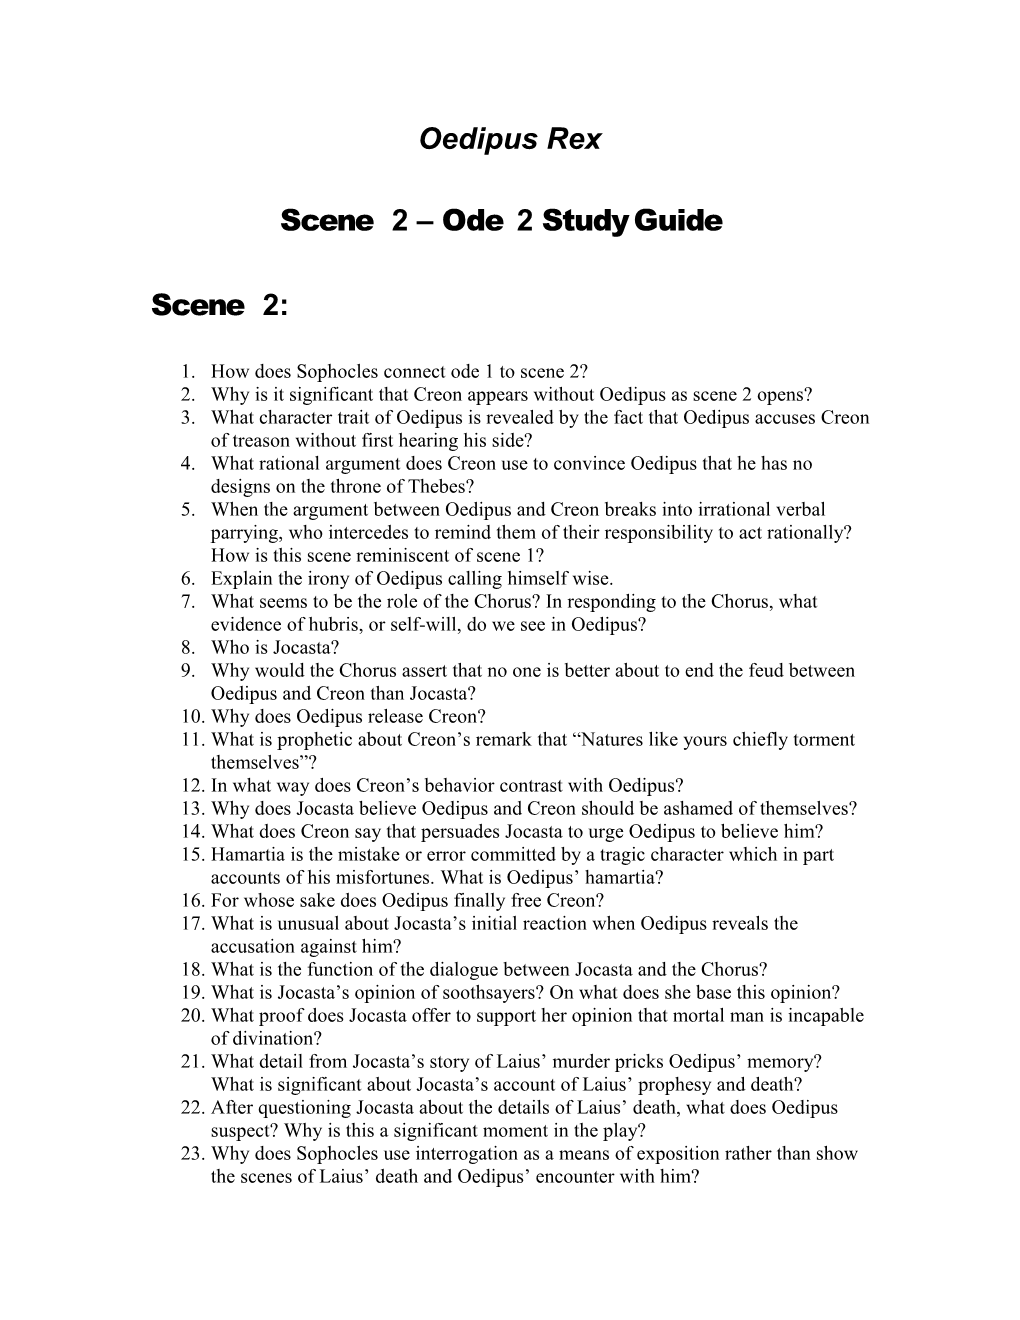 Scene 2 Ode 2 Study Guide